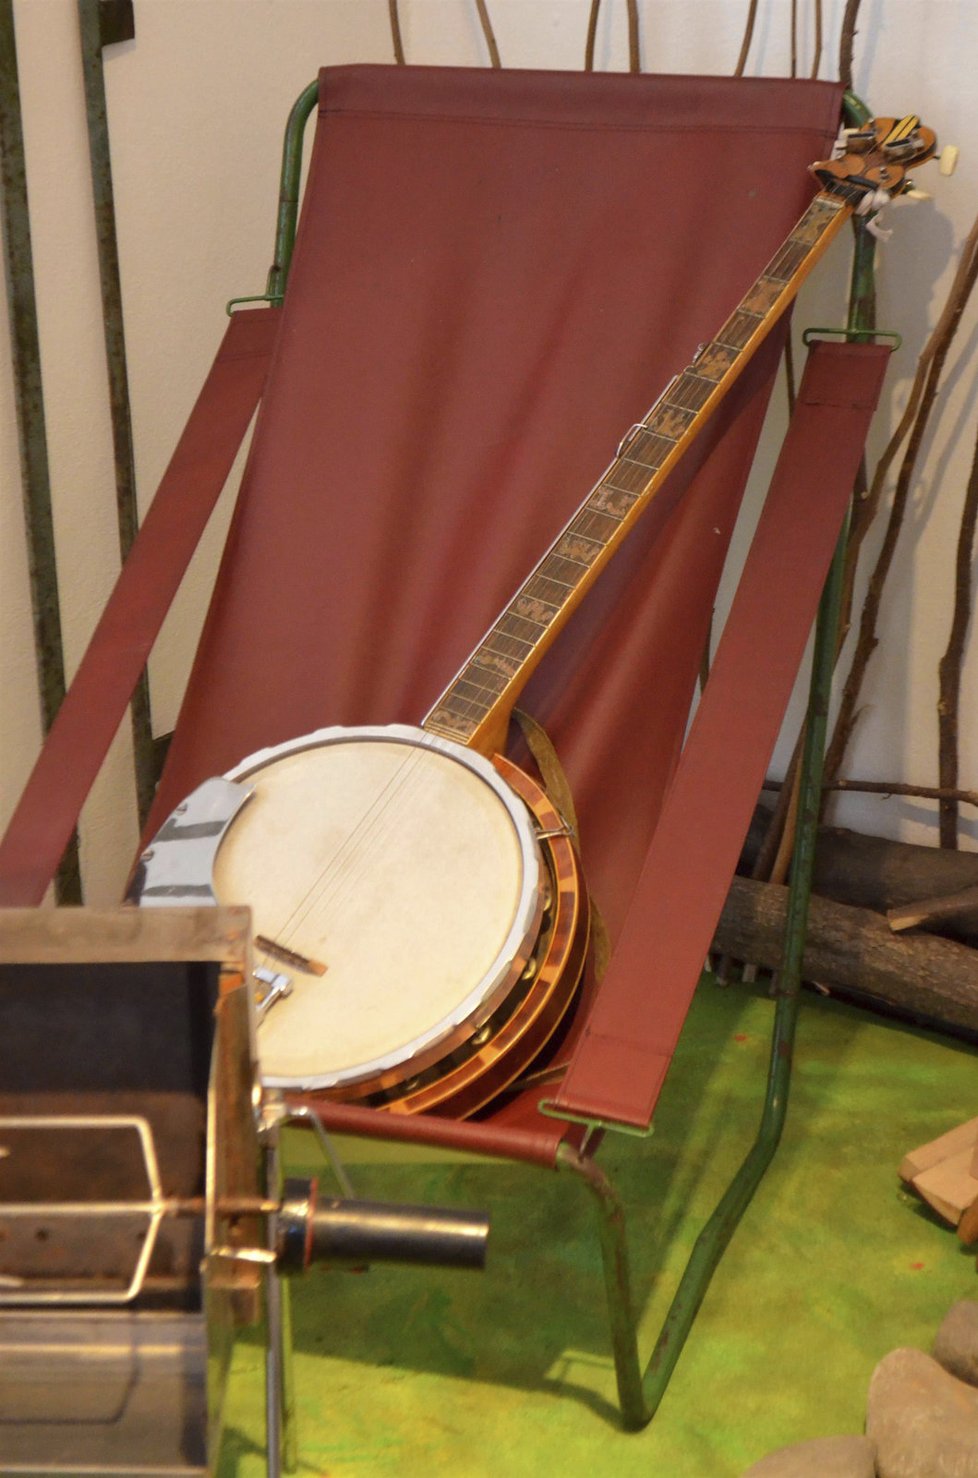 Pamatujete si odporné kožené potahy z vlaků? Z podobných si tatrováci vyráběli křesla. Uměli ale třeba okovat banjo.